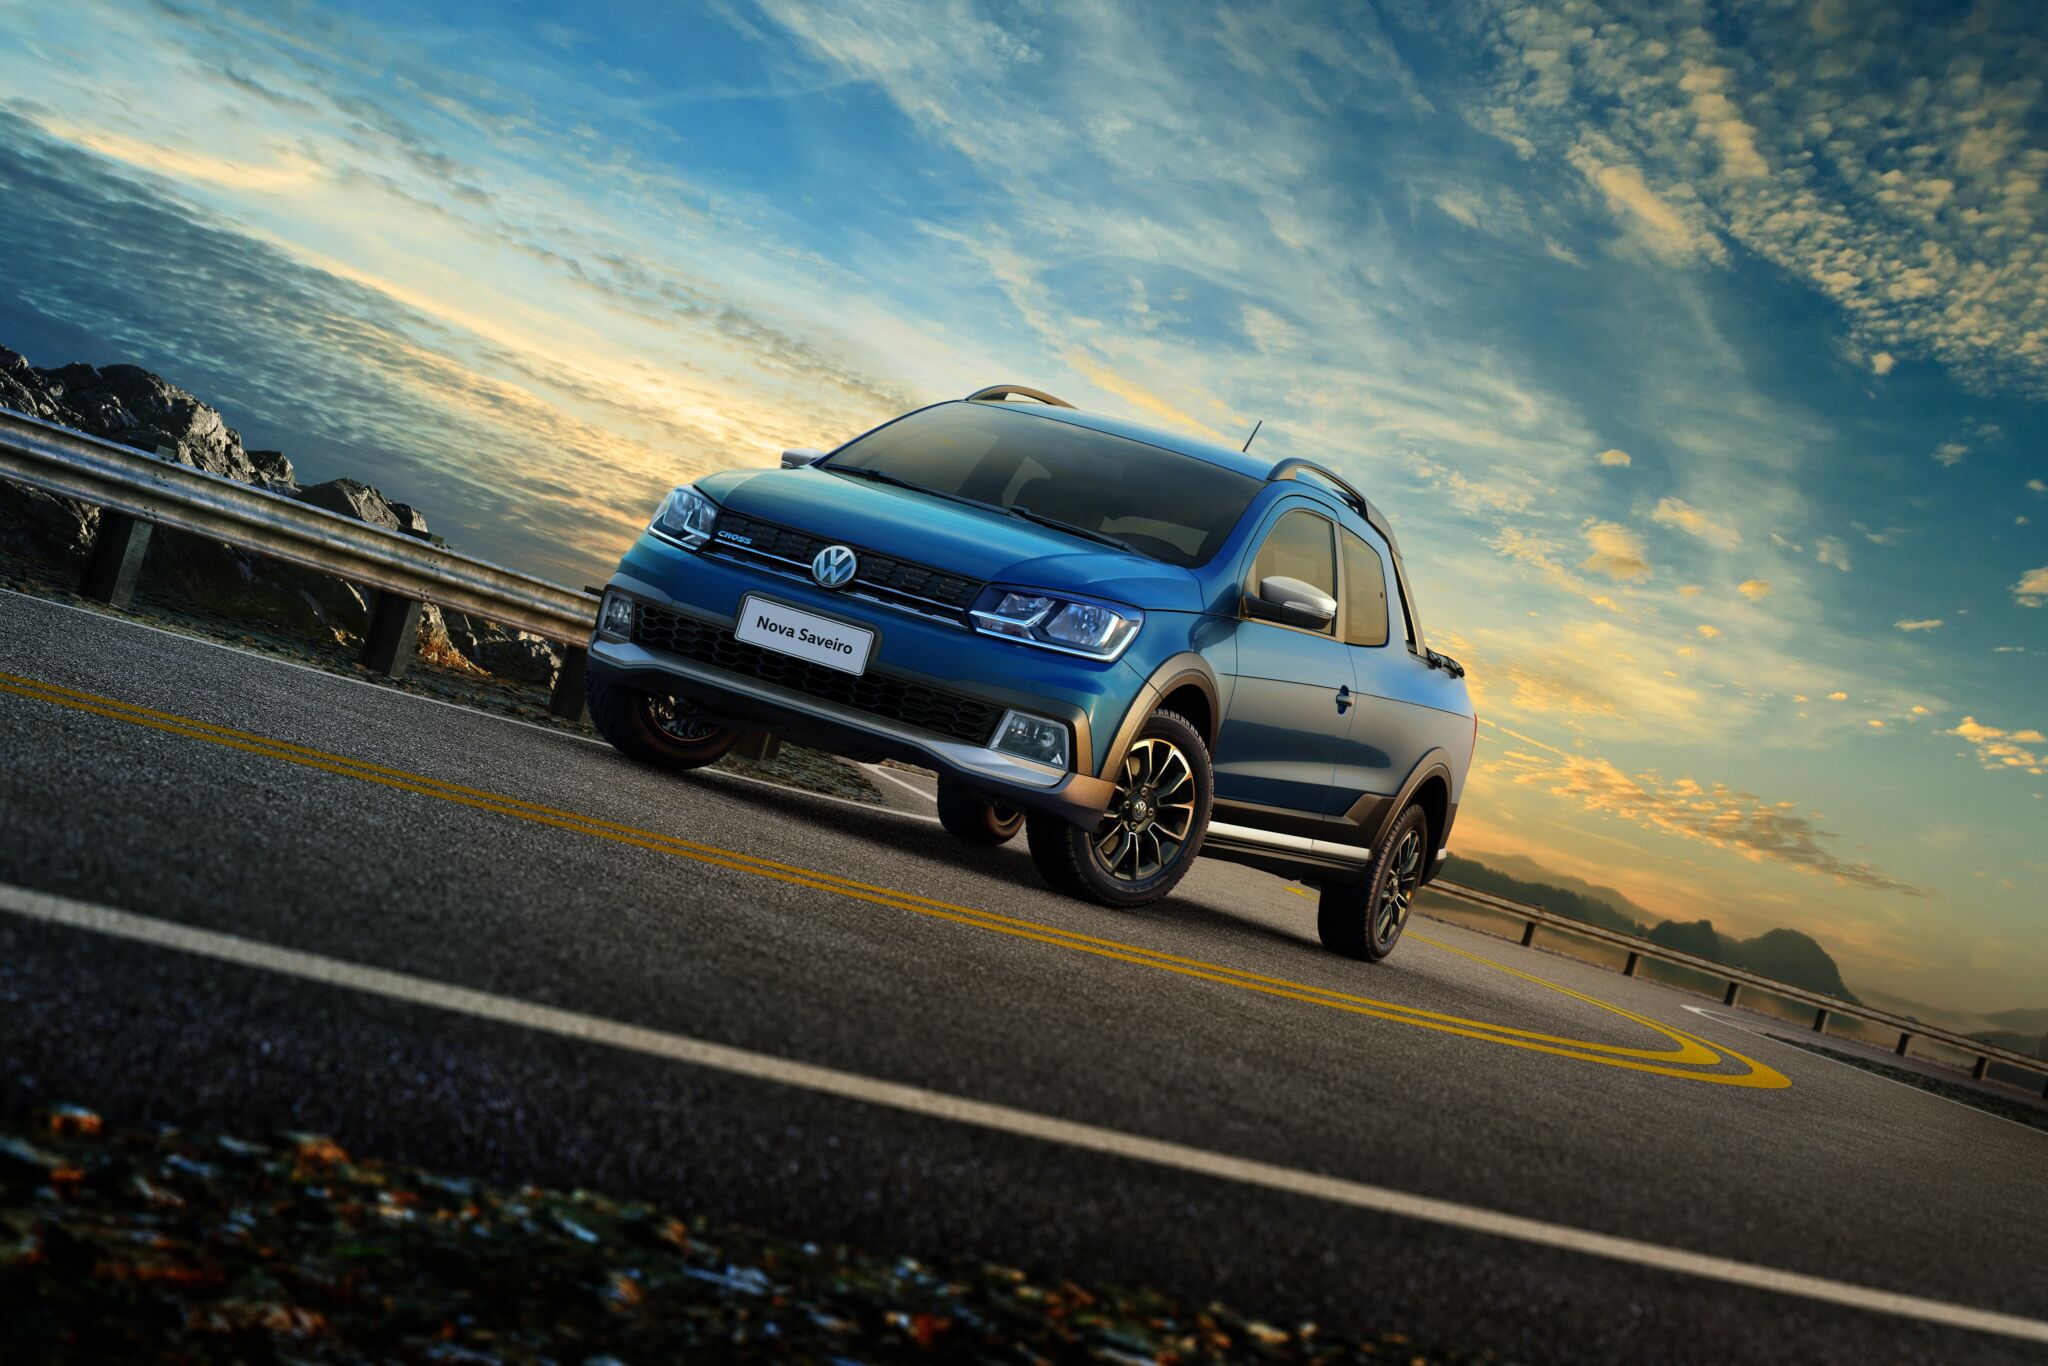 Volkswagen Saveiro cabine dupla chega às lojas em setembro